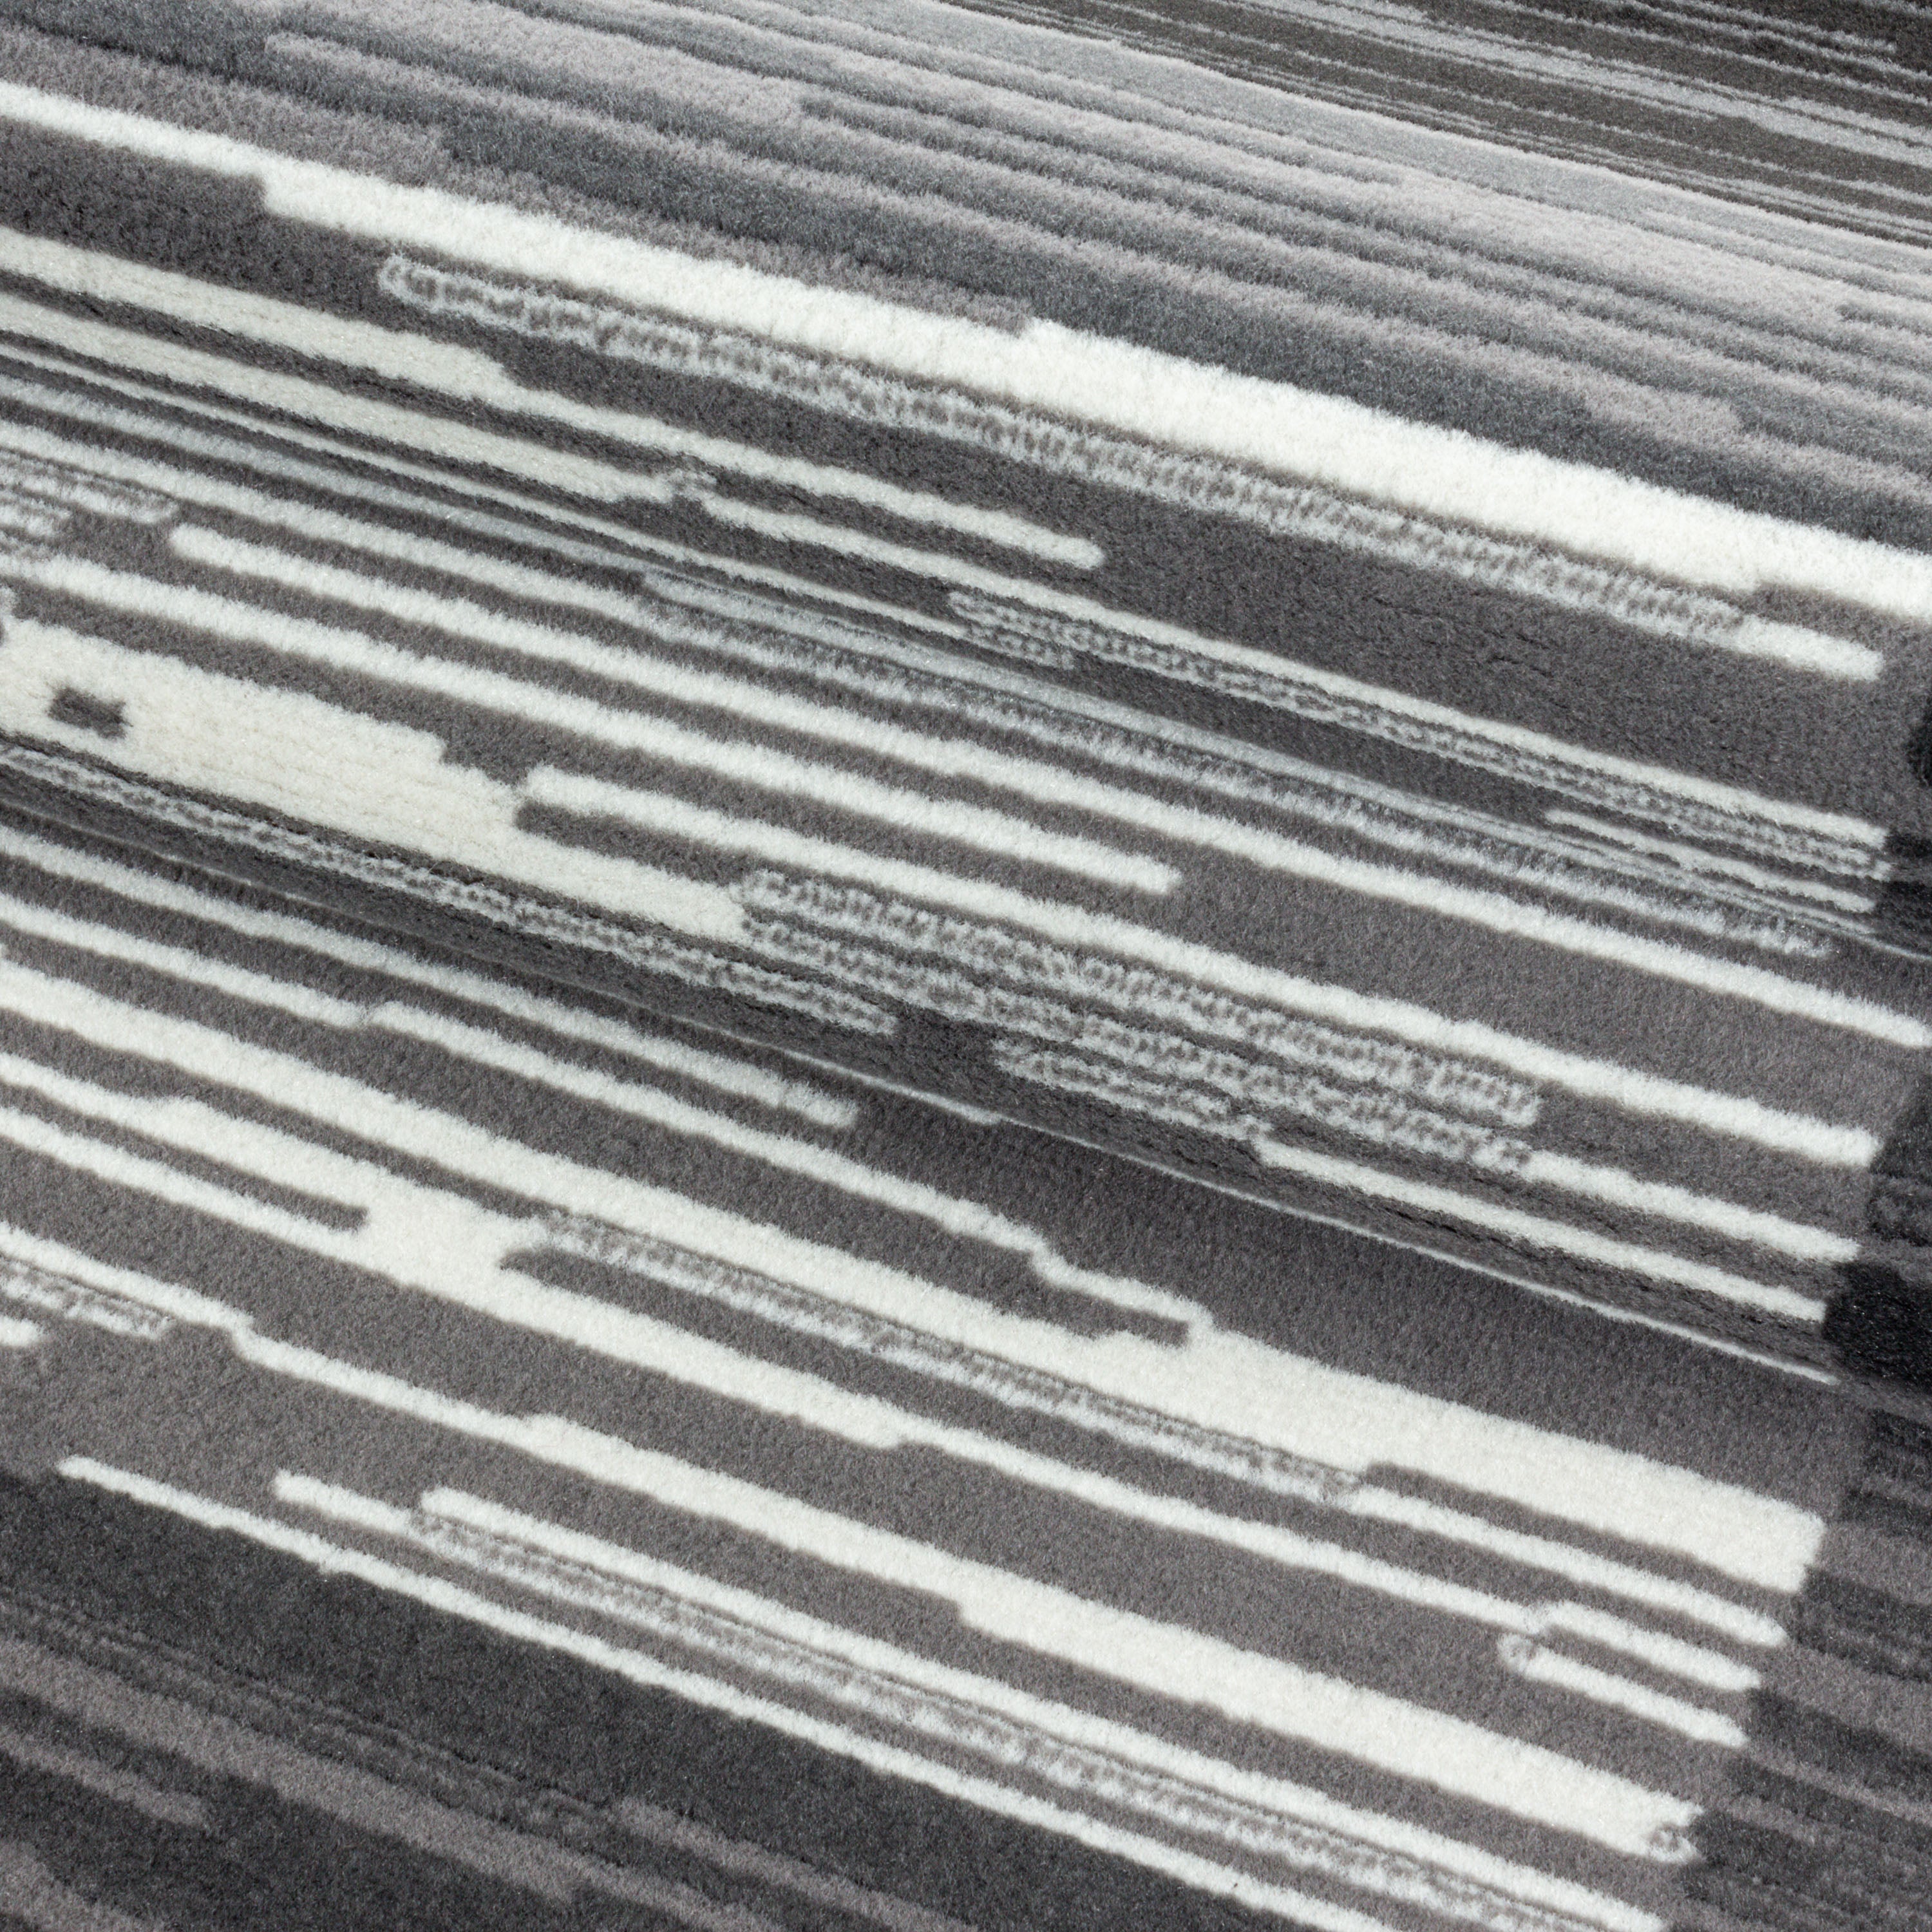 Kurzflor Teppich Modernes Muster mit Bordüre Wohnzimmerteppich Flor Weich Grau